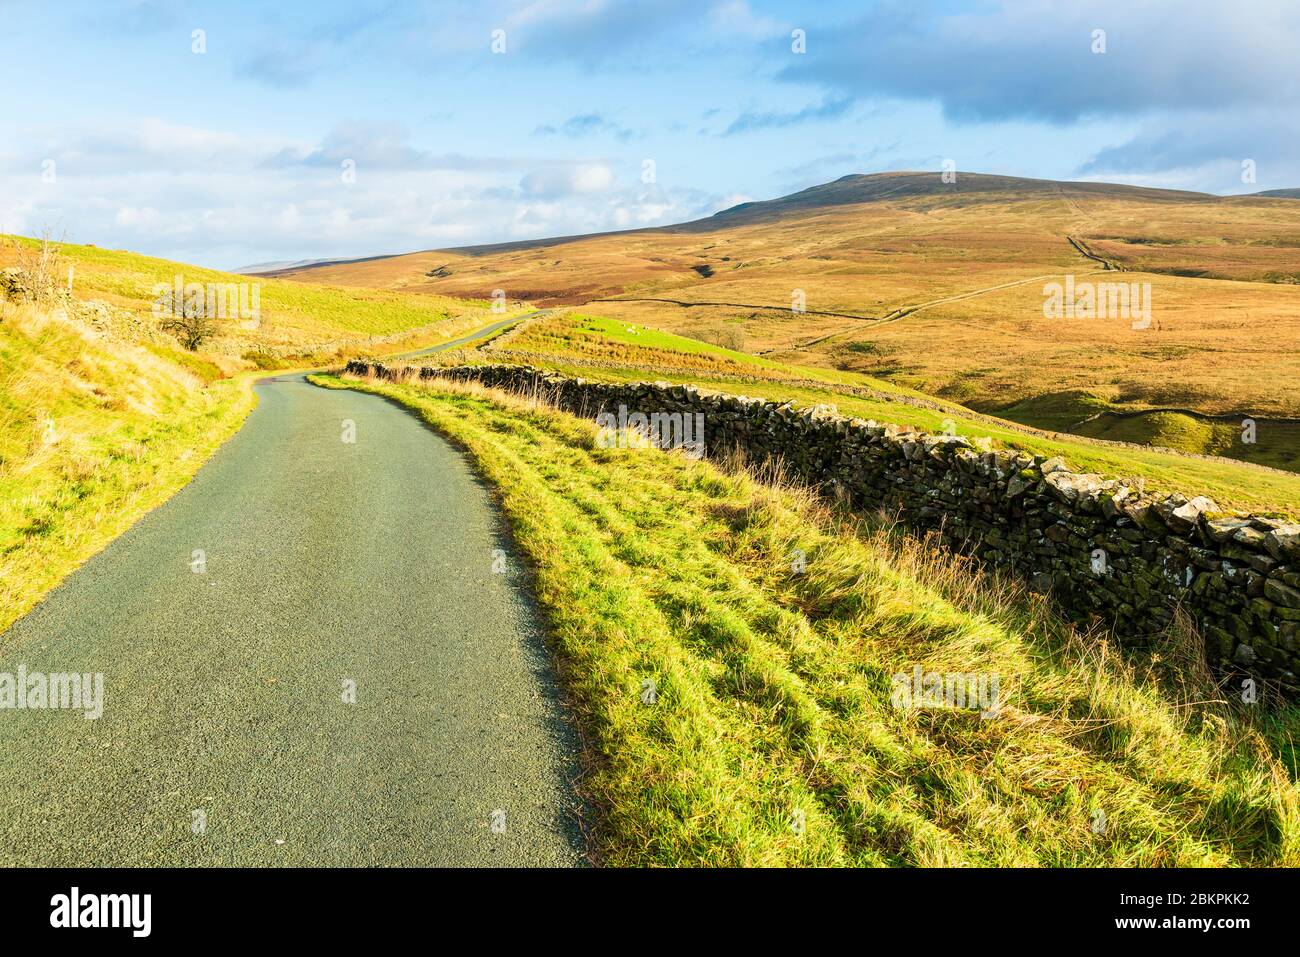 Carretera sobre el valle de Leck Beck y Ease Gill, en la frontera de Lancashire-Cumbria, con Great Coum y Crag Hill en el horizonte Foto de stock